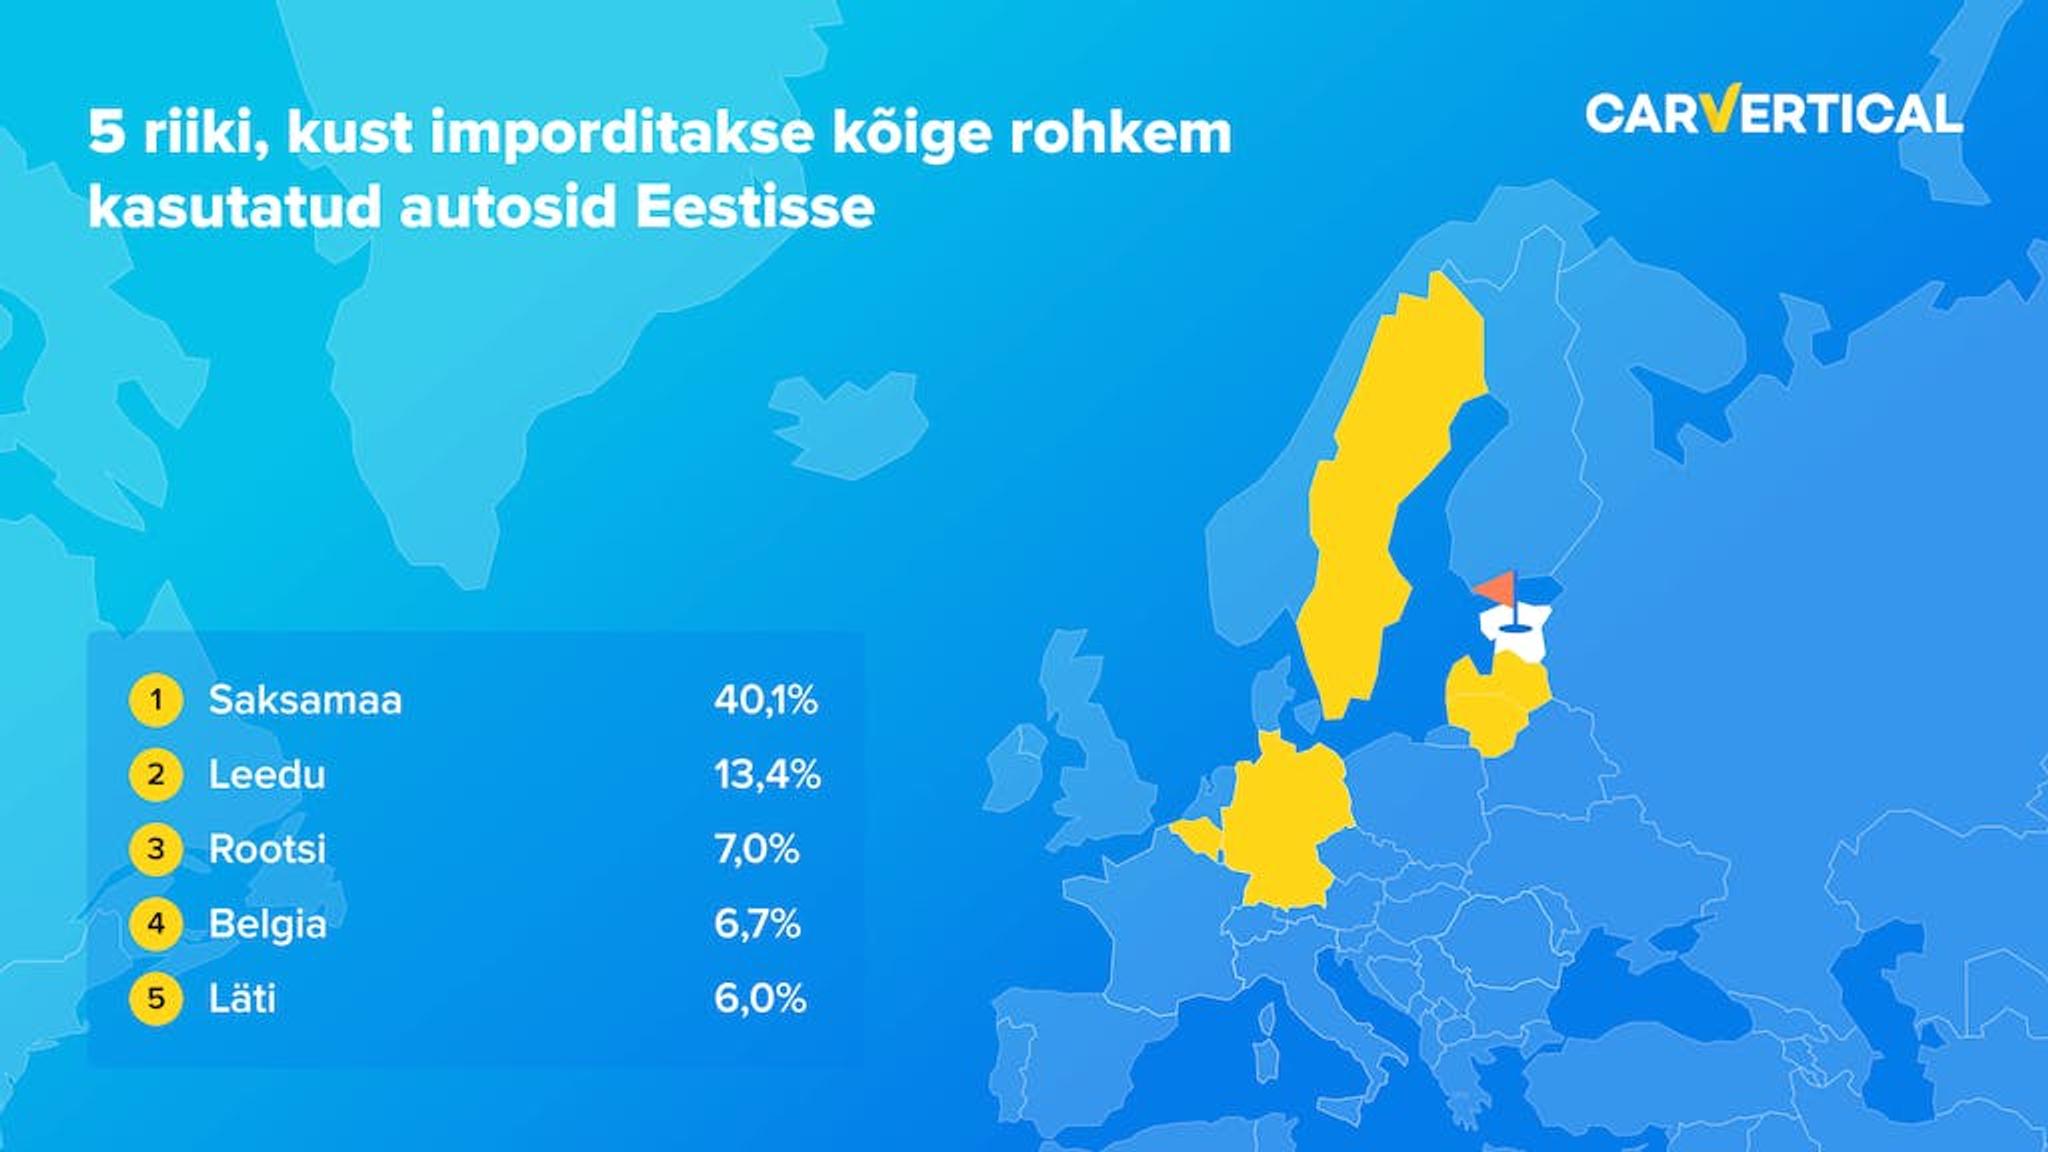 5 riiki, kust imporditakse koige rohkem kasutatud autosid Eestisse